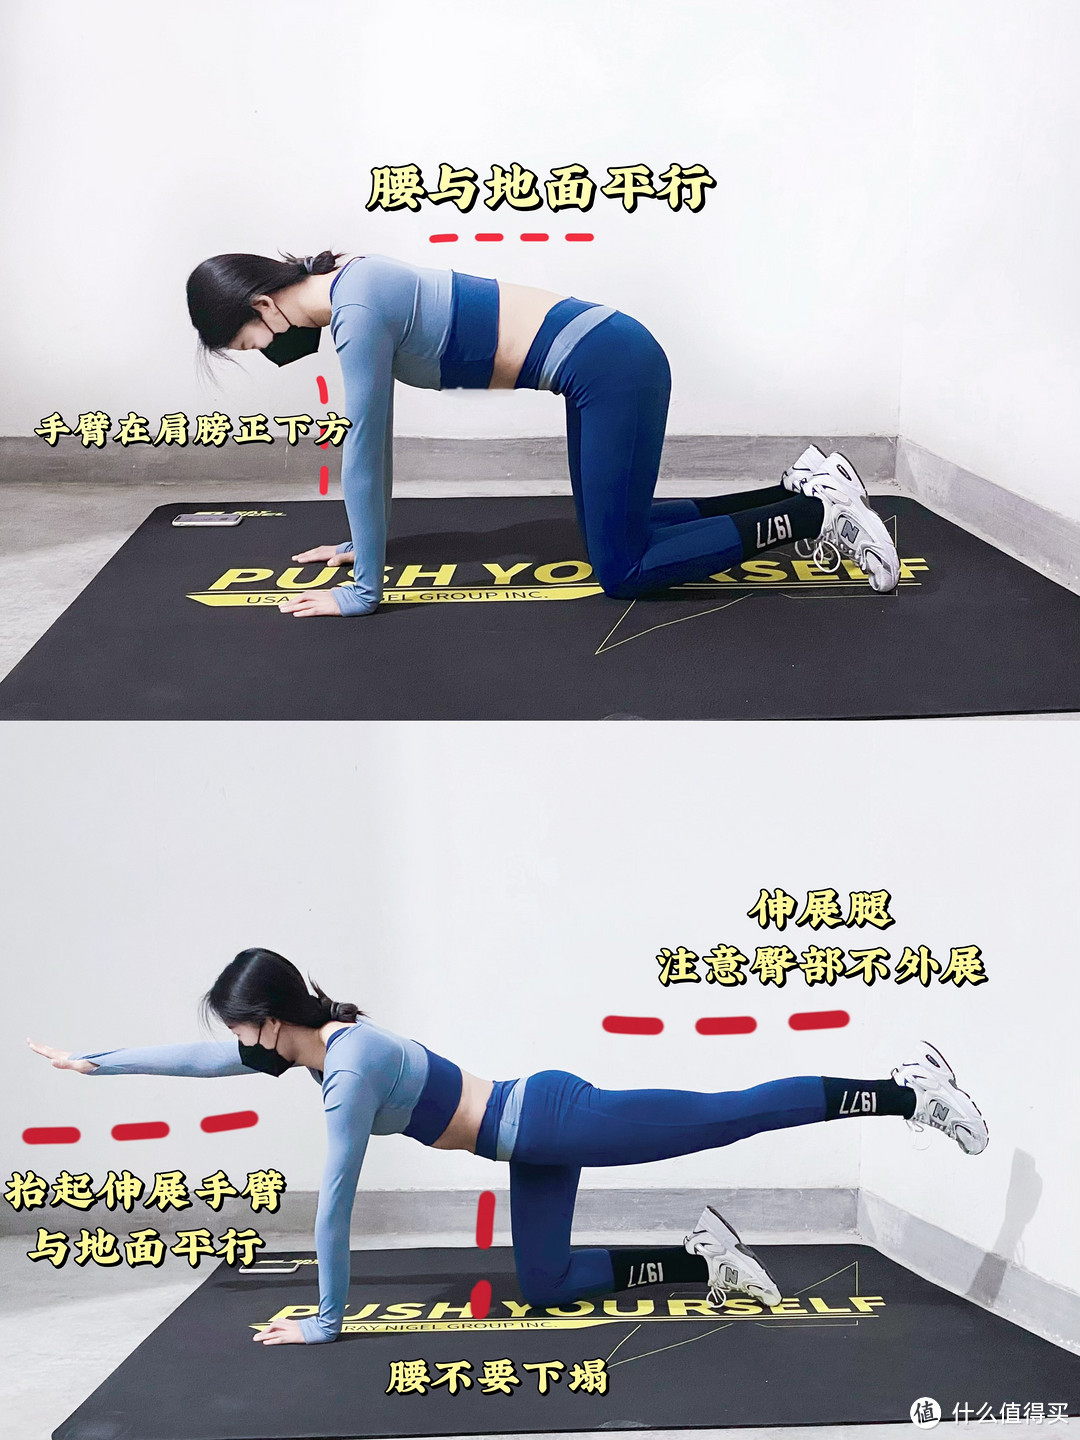 4个动作缓解腰痛，增强核心力量，轻松摆脱久坐腰酸背痛困扰!